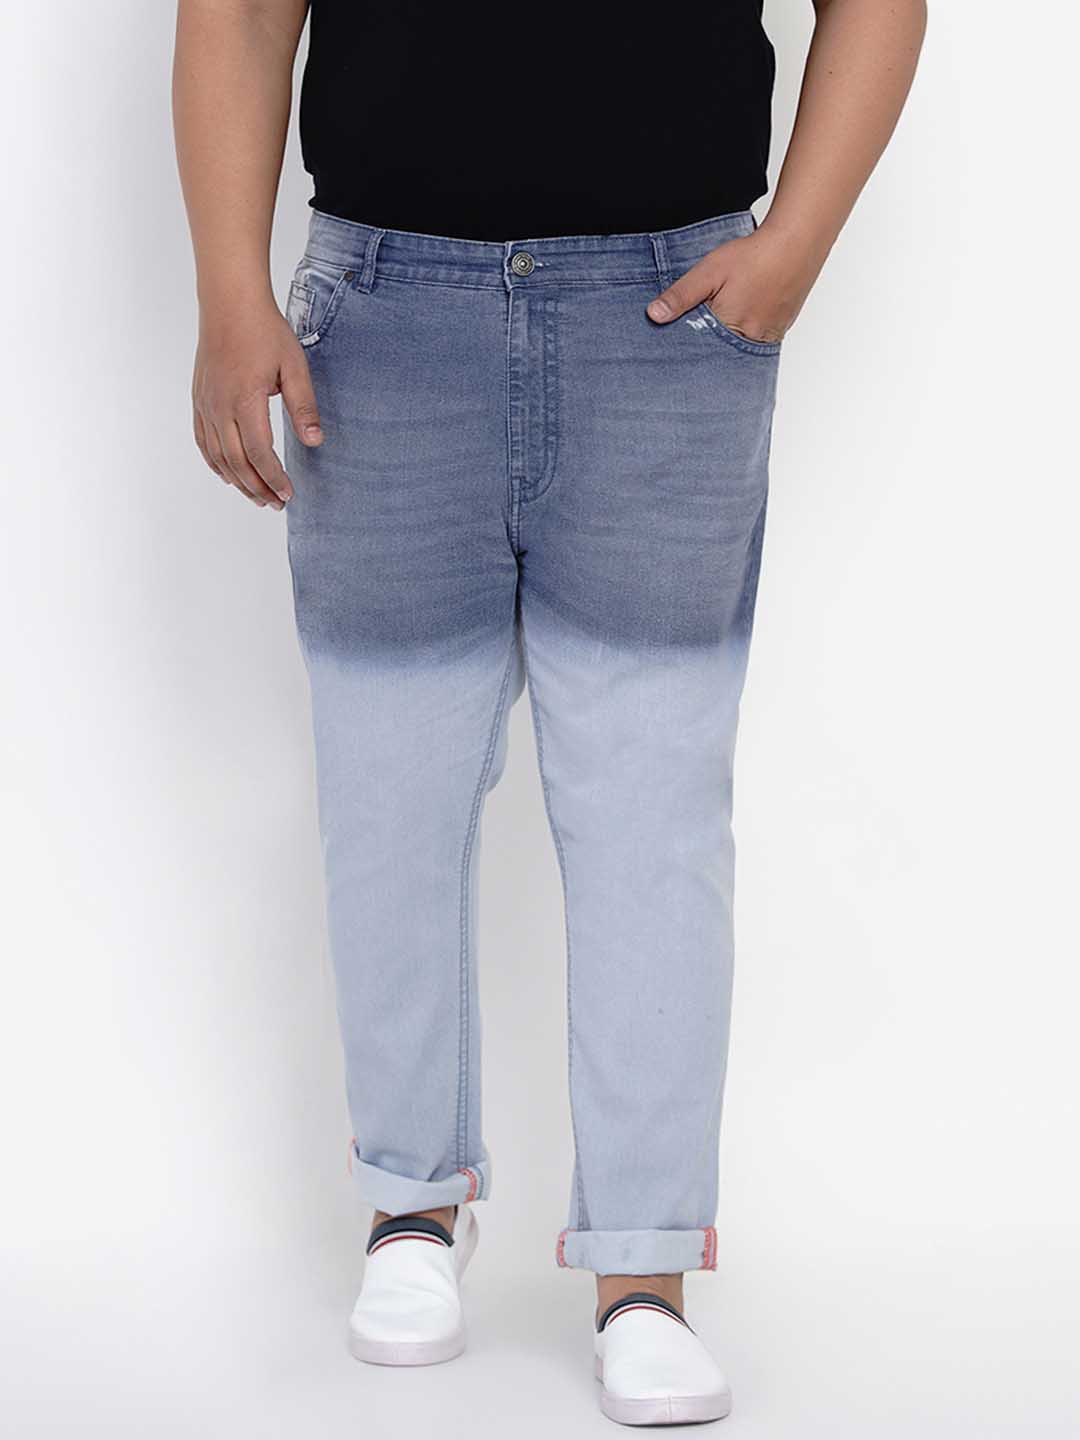 bottomwear/jeans/JPJ6004/jpj6004-2.jpg